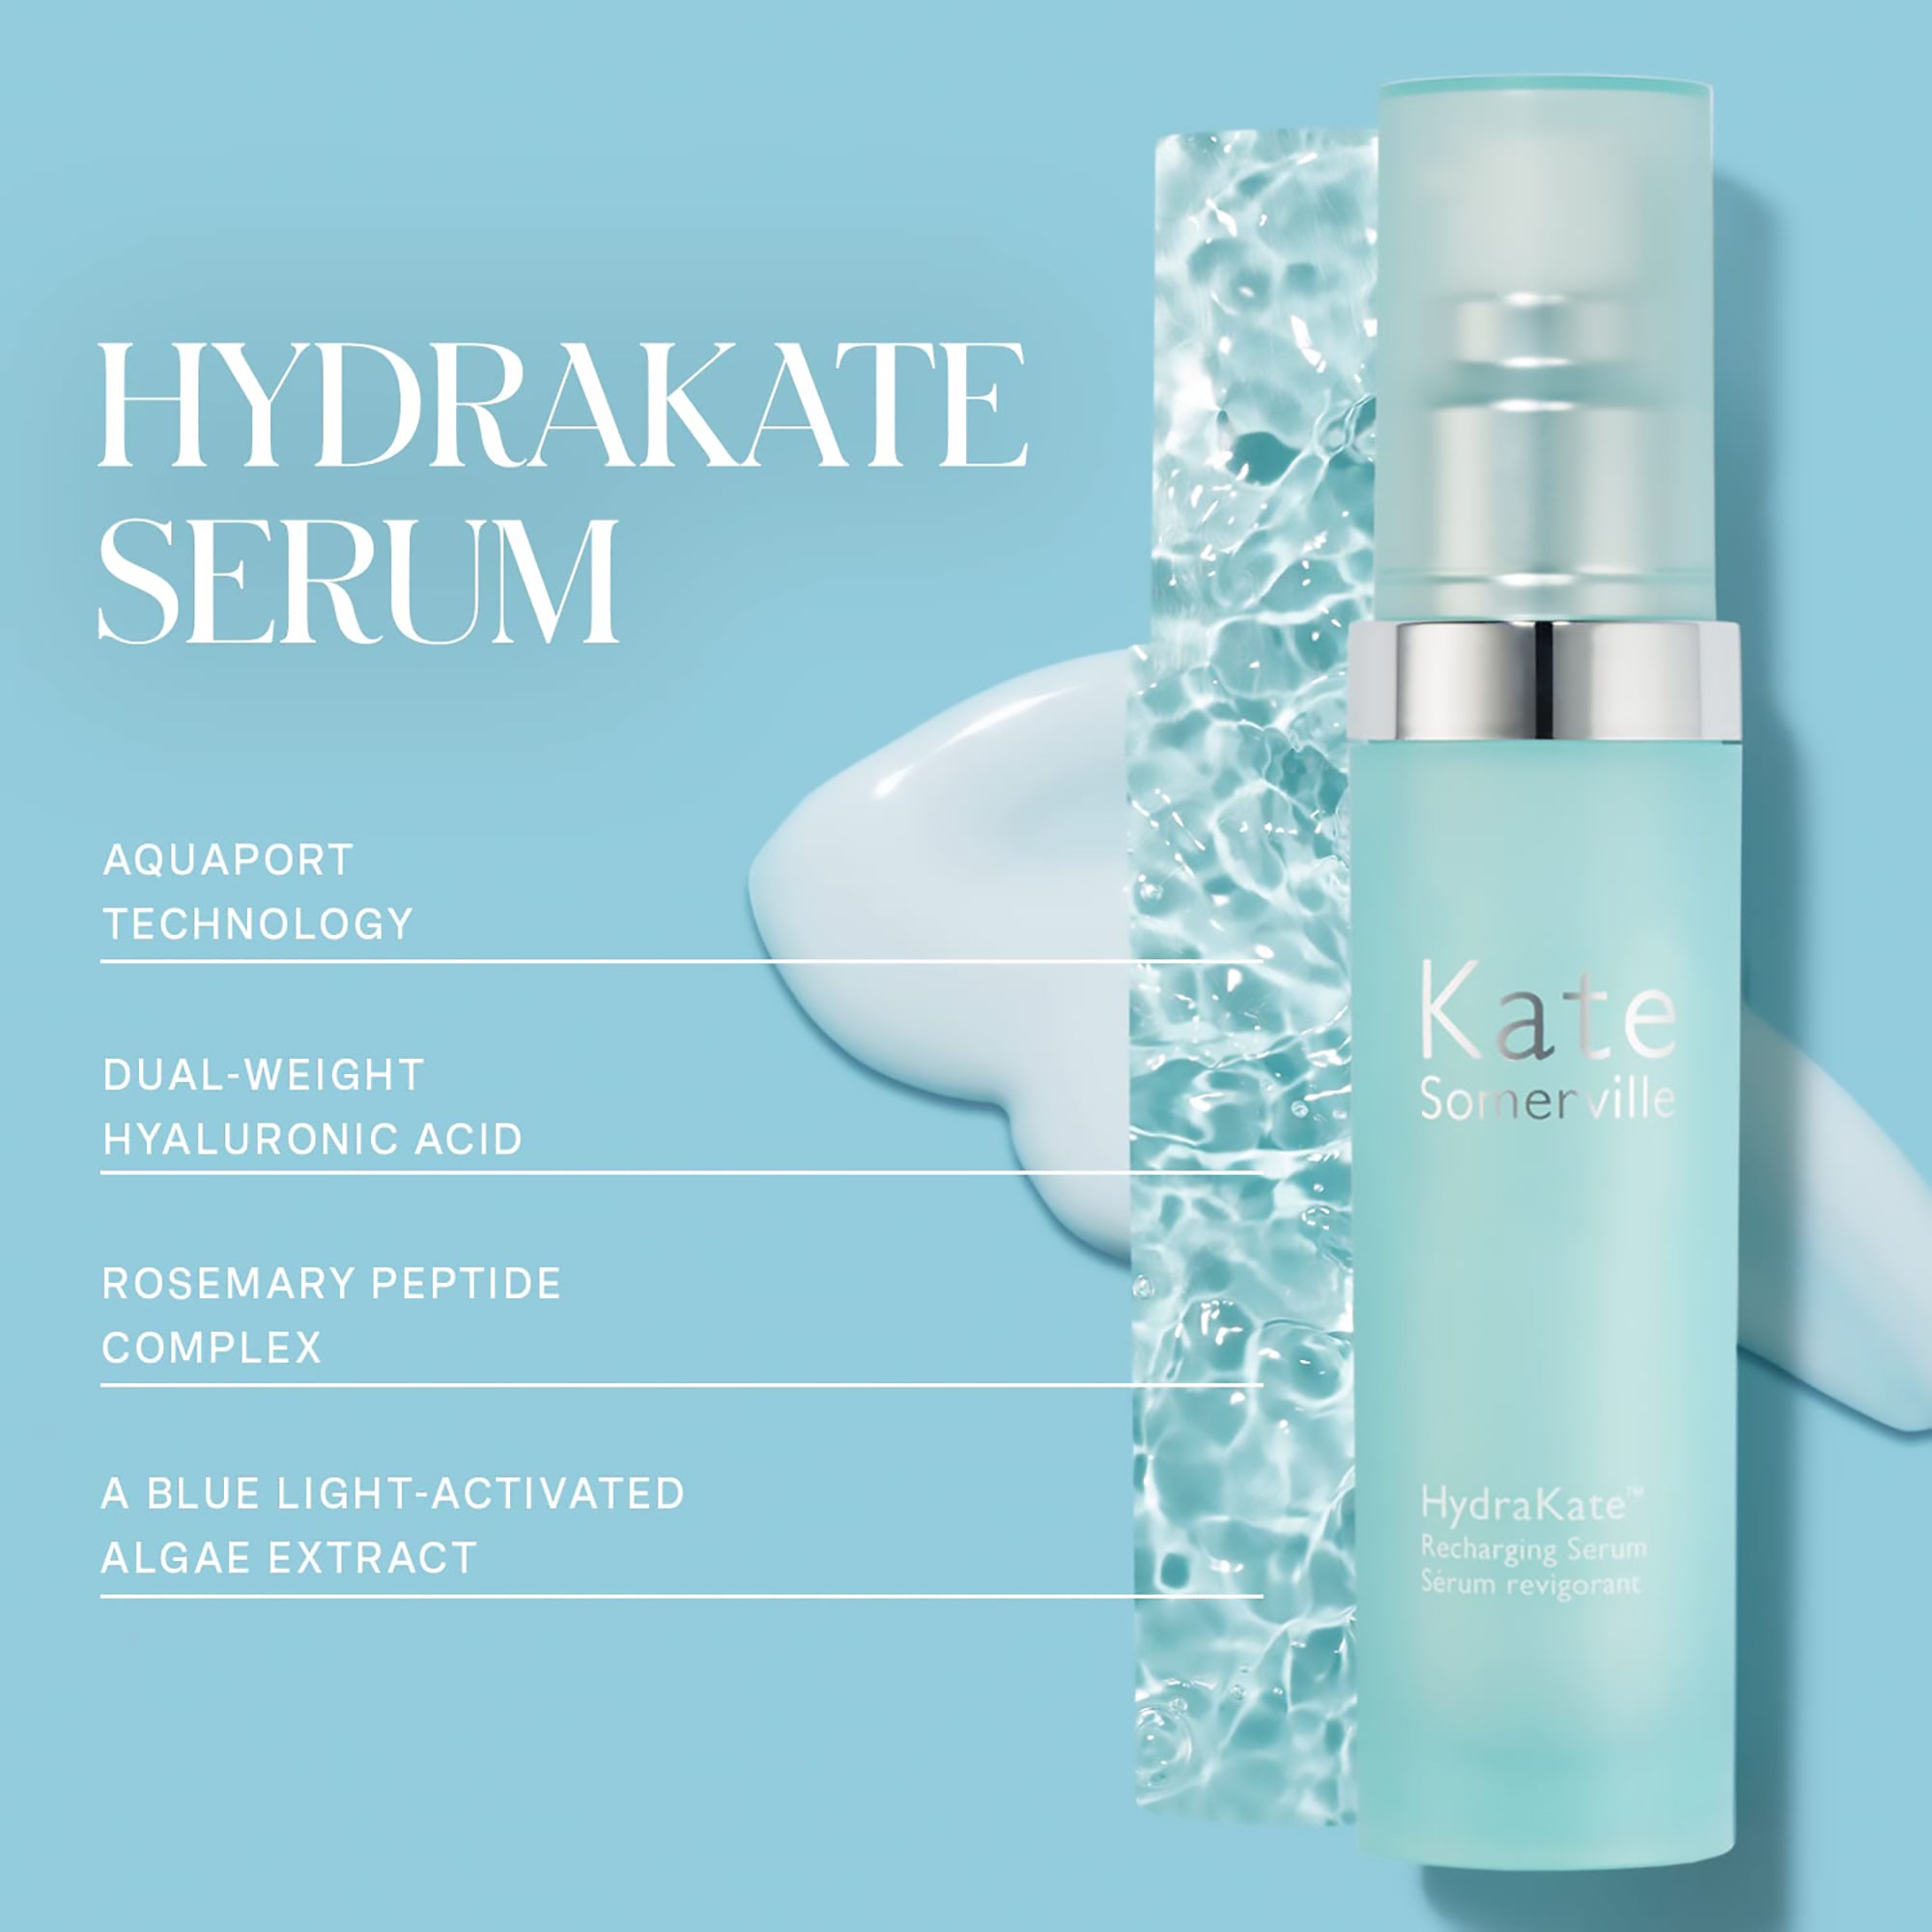 Kate Somerville HydraKate Recharging Hydrating Serum / 1OZ